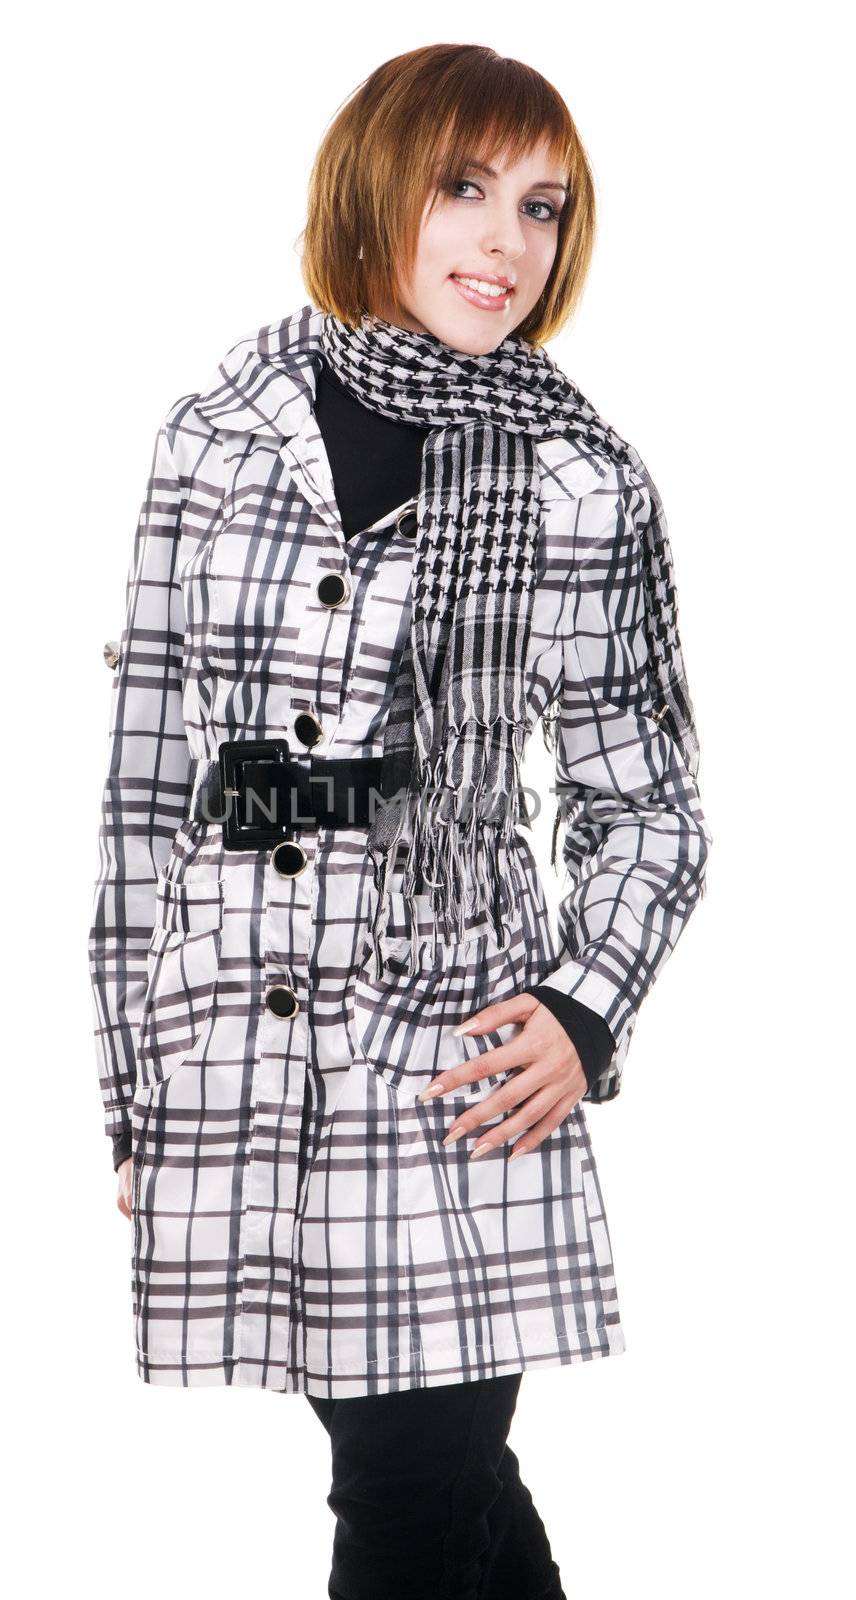 Lovely girl in demi-season checkered clothing